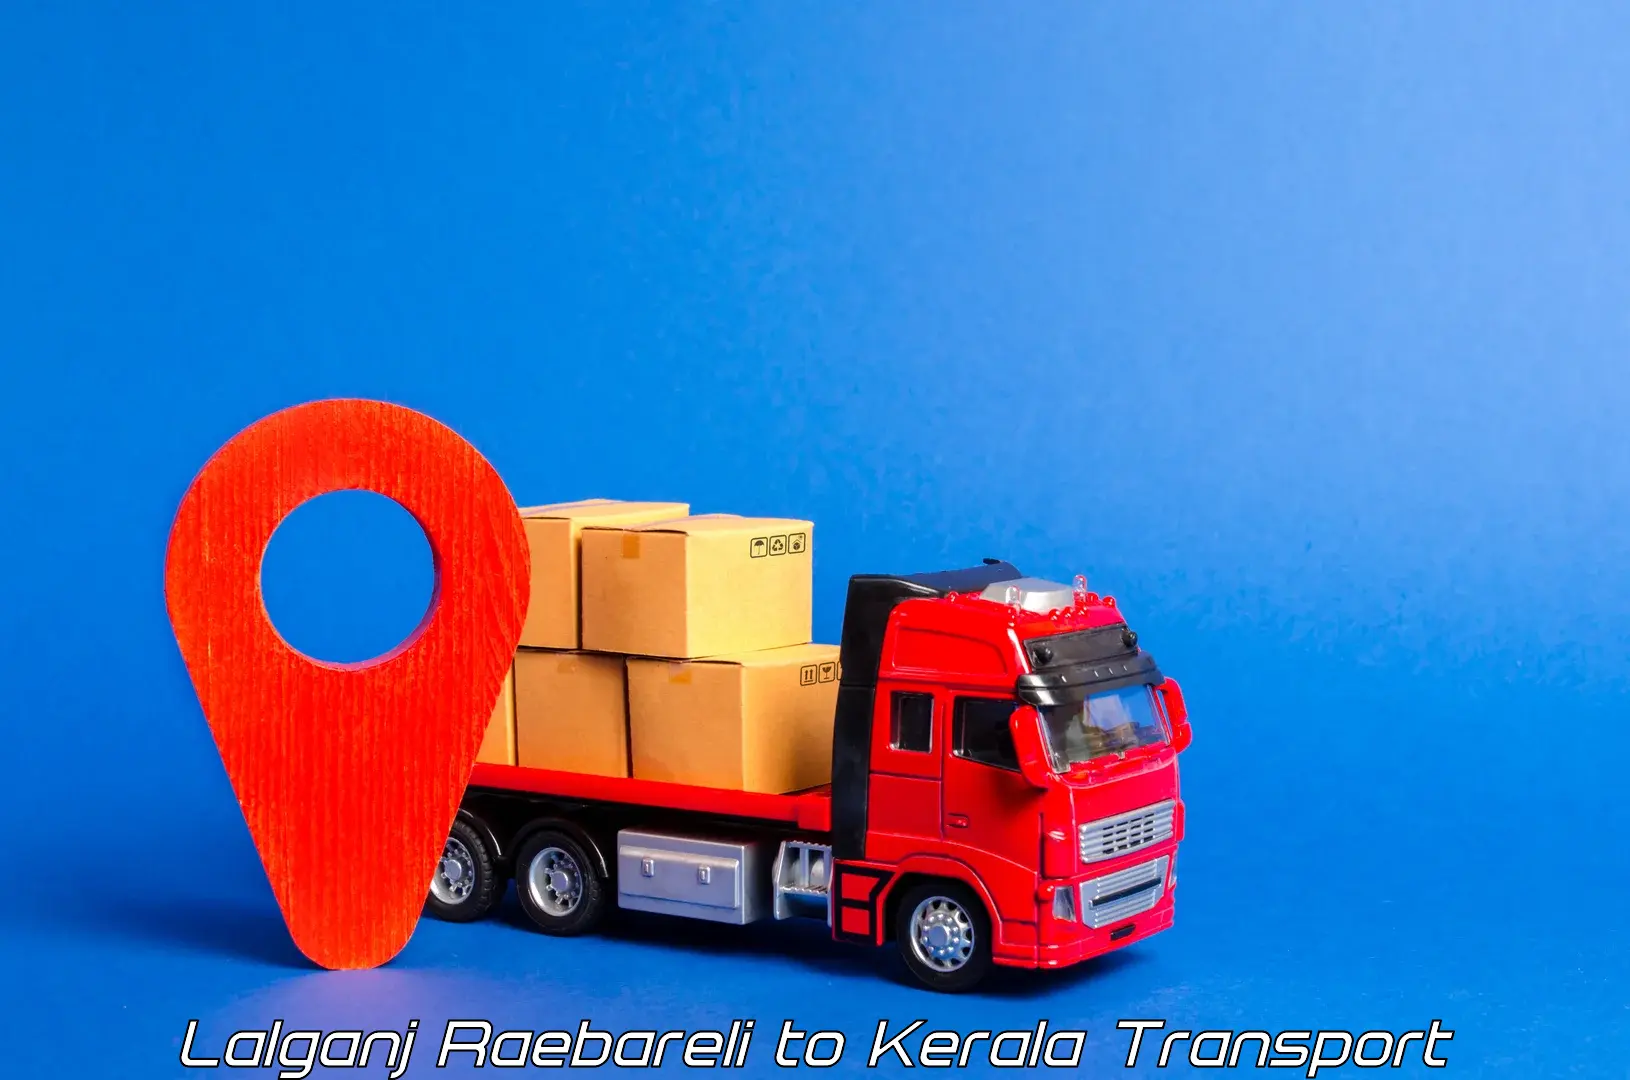 Transport in sharing in Lalganj Raebareli to Piravom